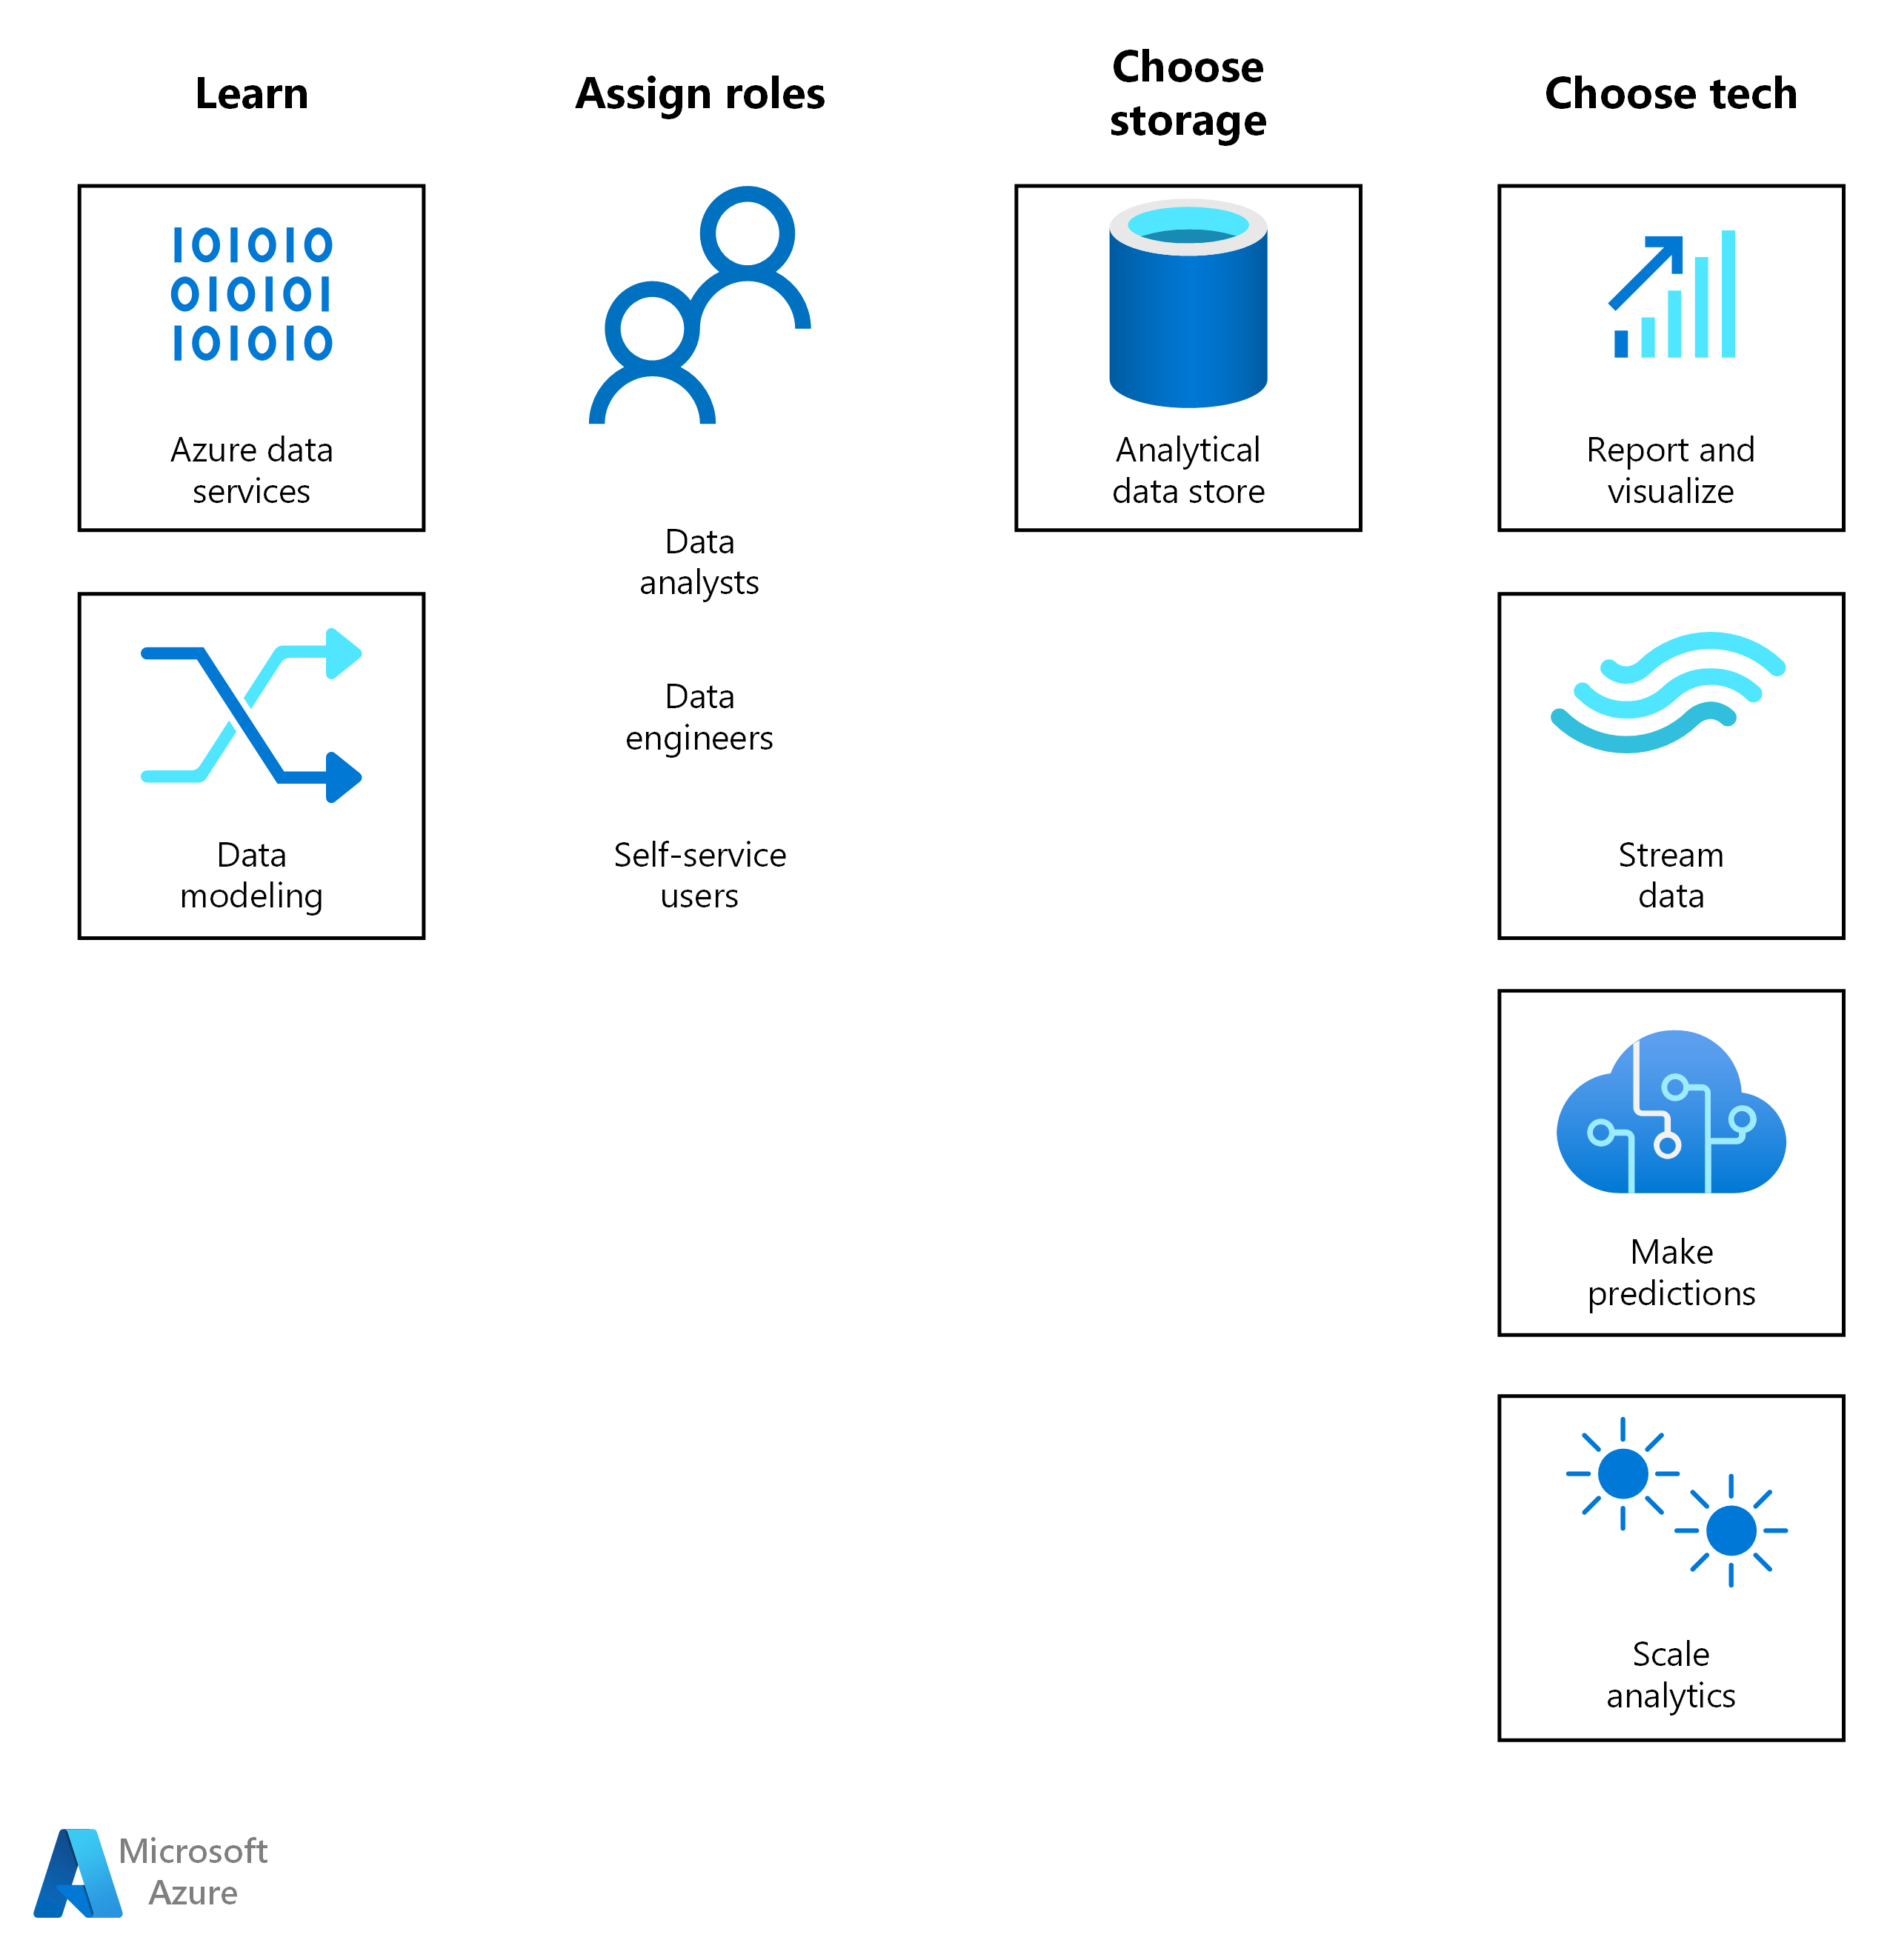 Der Lösungsweg für Analysen auf Azure beginnt mit dem Erlernen und Zuweisen von Rollen. Als Nächstes wählen Sie eine Speicherlösung und eine Azure BI- oder KI-Technologie für den Workload.